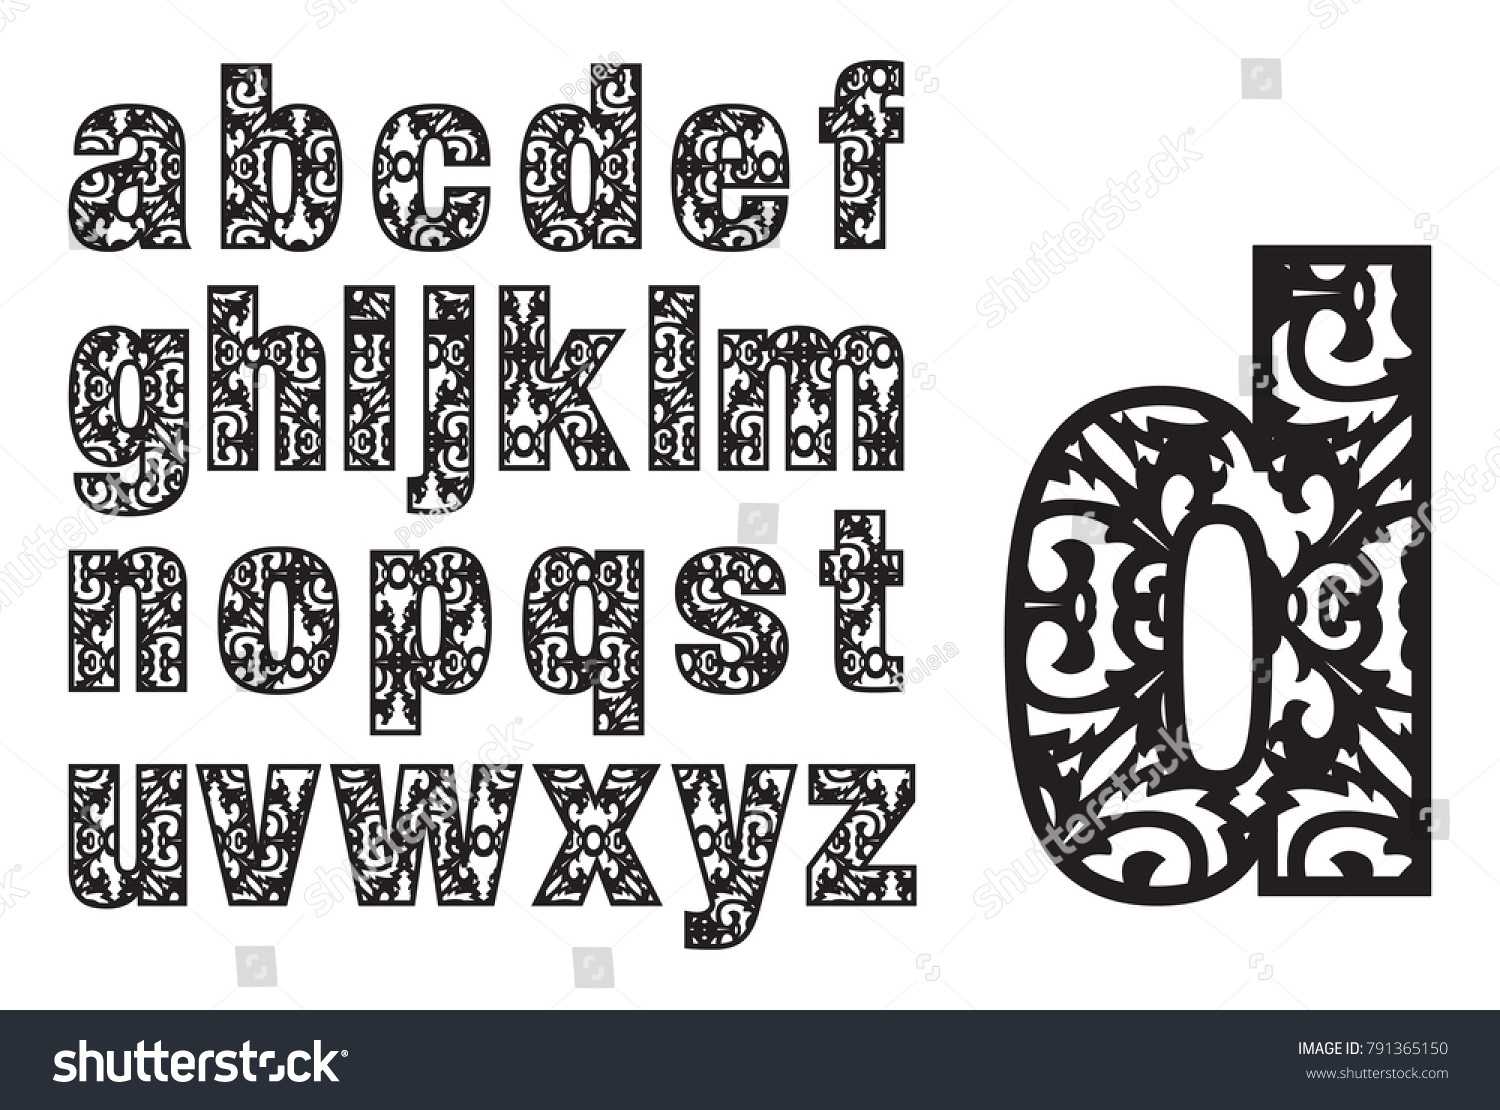 Lowercase Letters Alphabet Laser Cut Template Stock Vector Regarding Fancy Alphabet Letter Templates